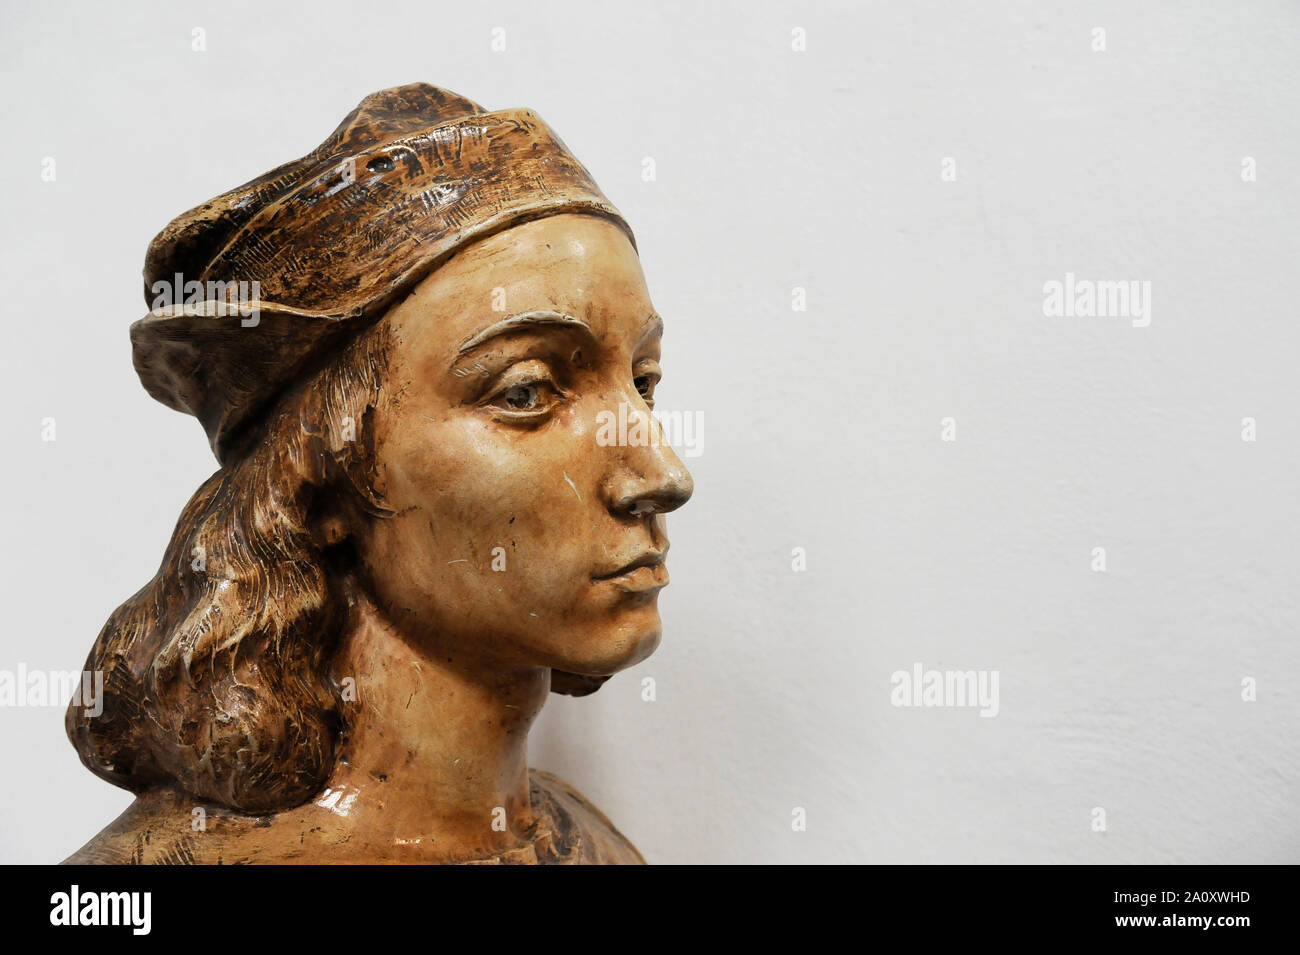 Buste de Raffaello Sanzio, connu sous le nom de Raphaël. Copie de l'espace sur l'arrière-plan. Banque D'Images